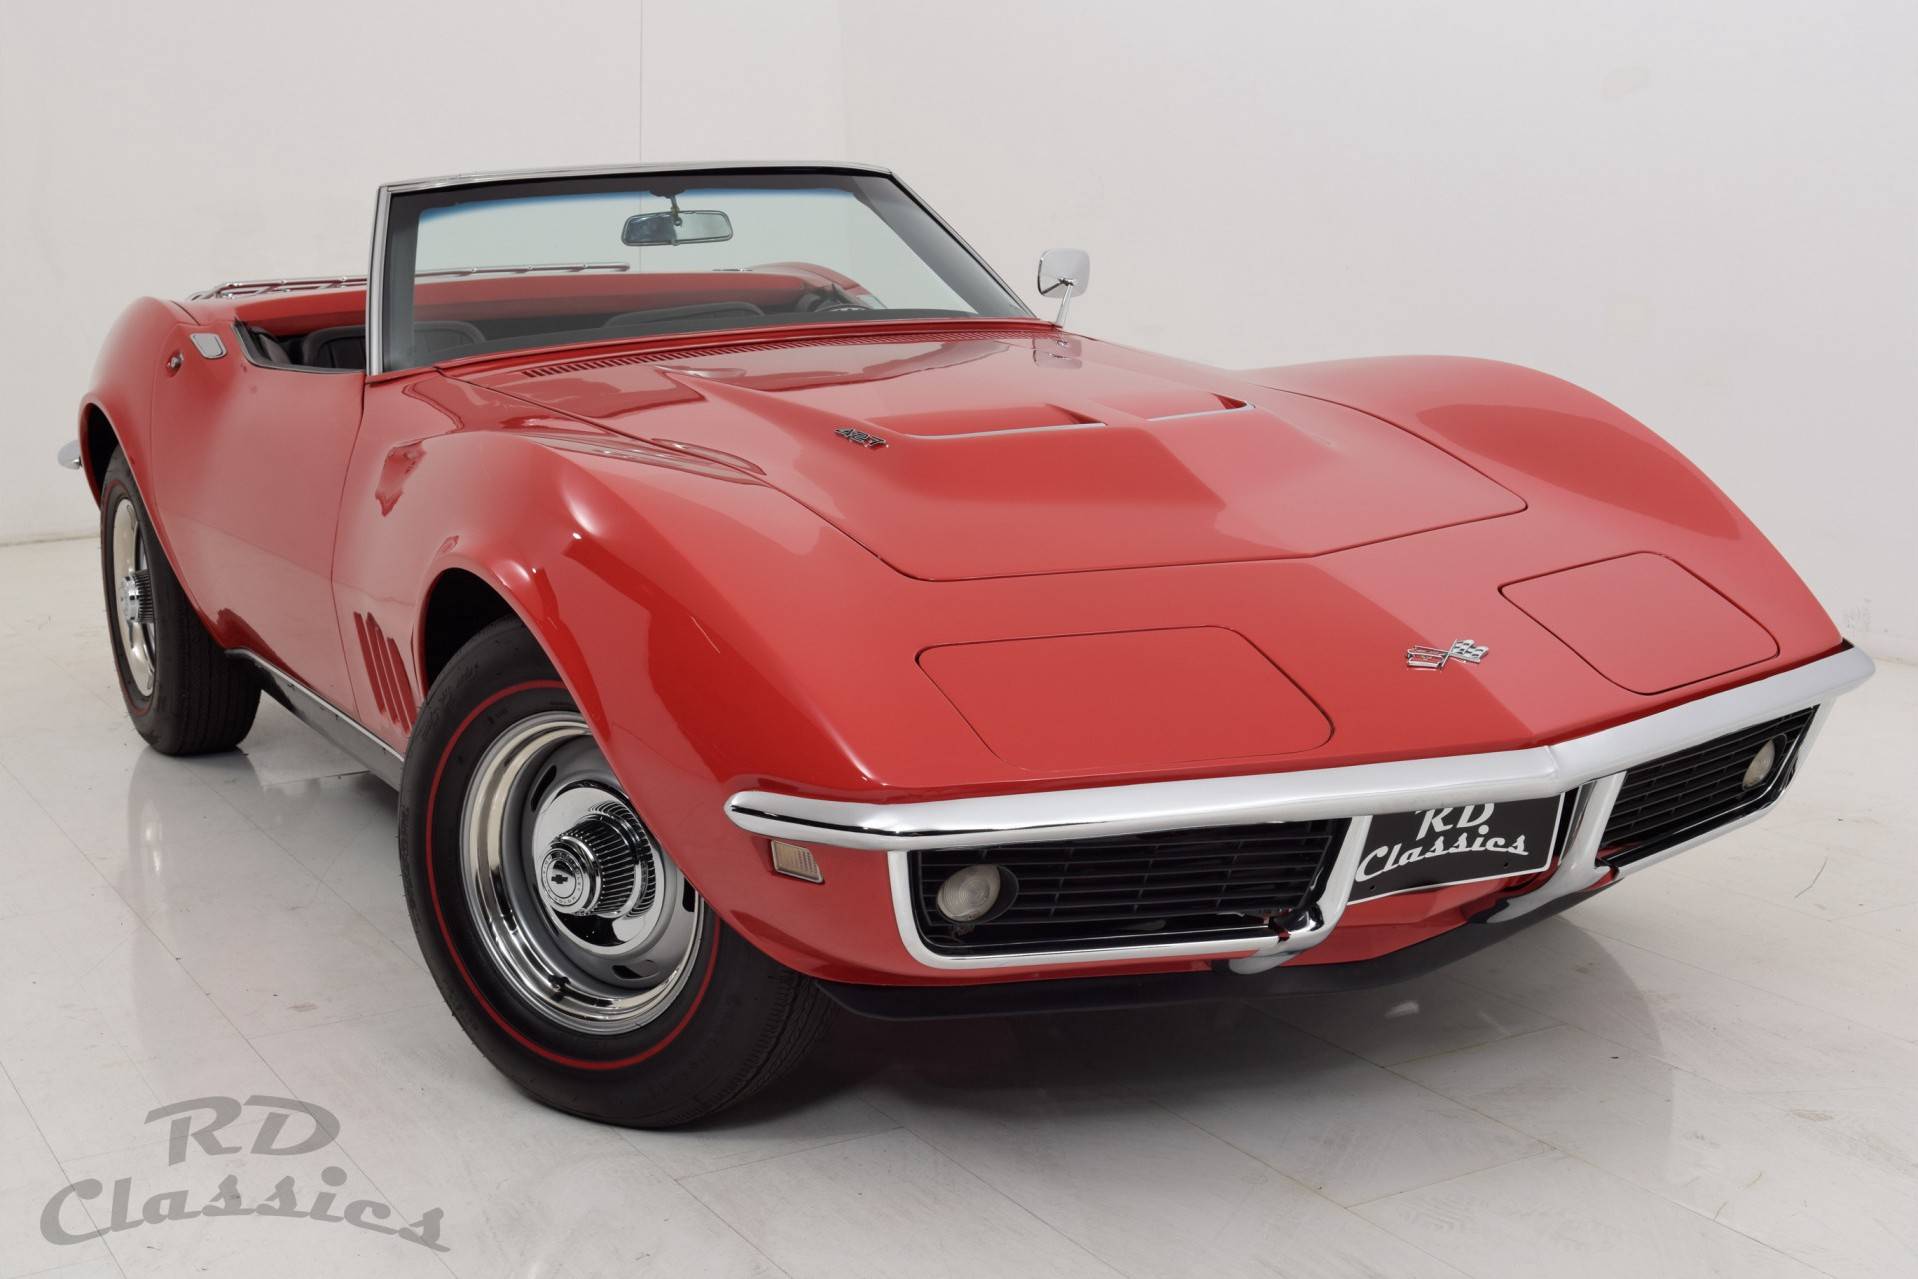 For Sale: Chevrolet Corvette Stingray (1968) offered for £52,786